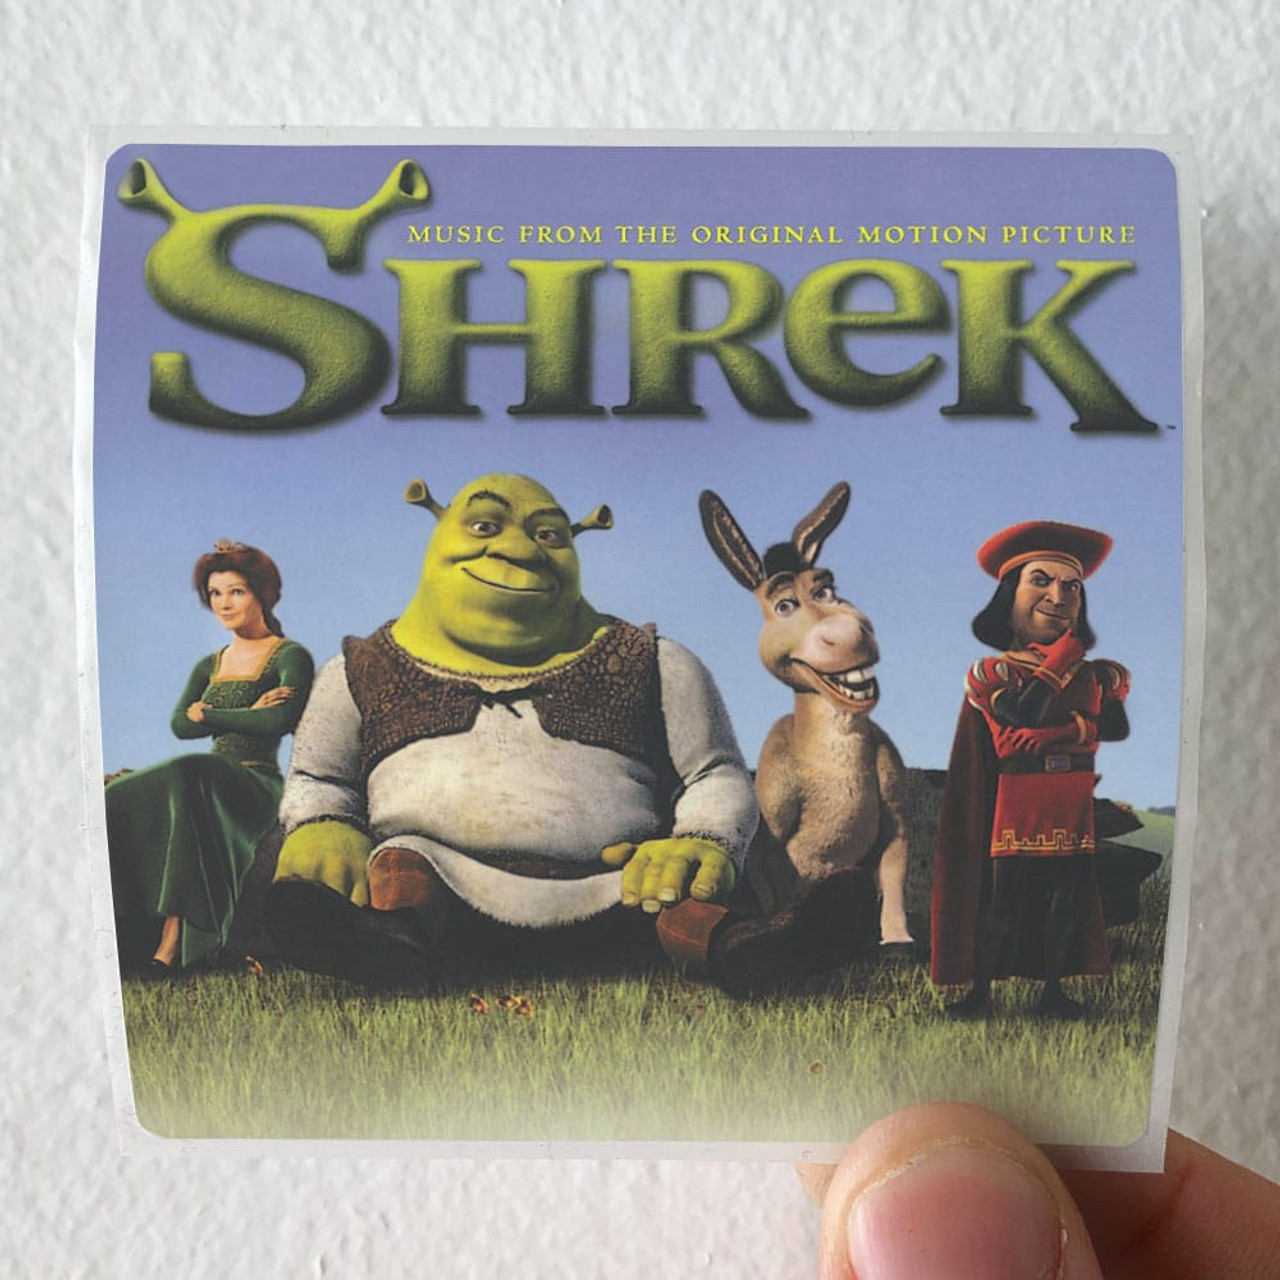 Sticker Maker - Shrek 1